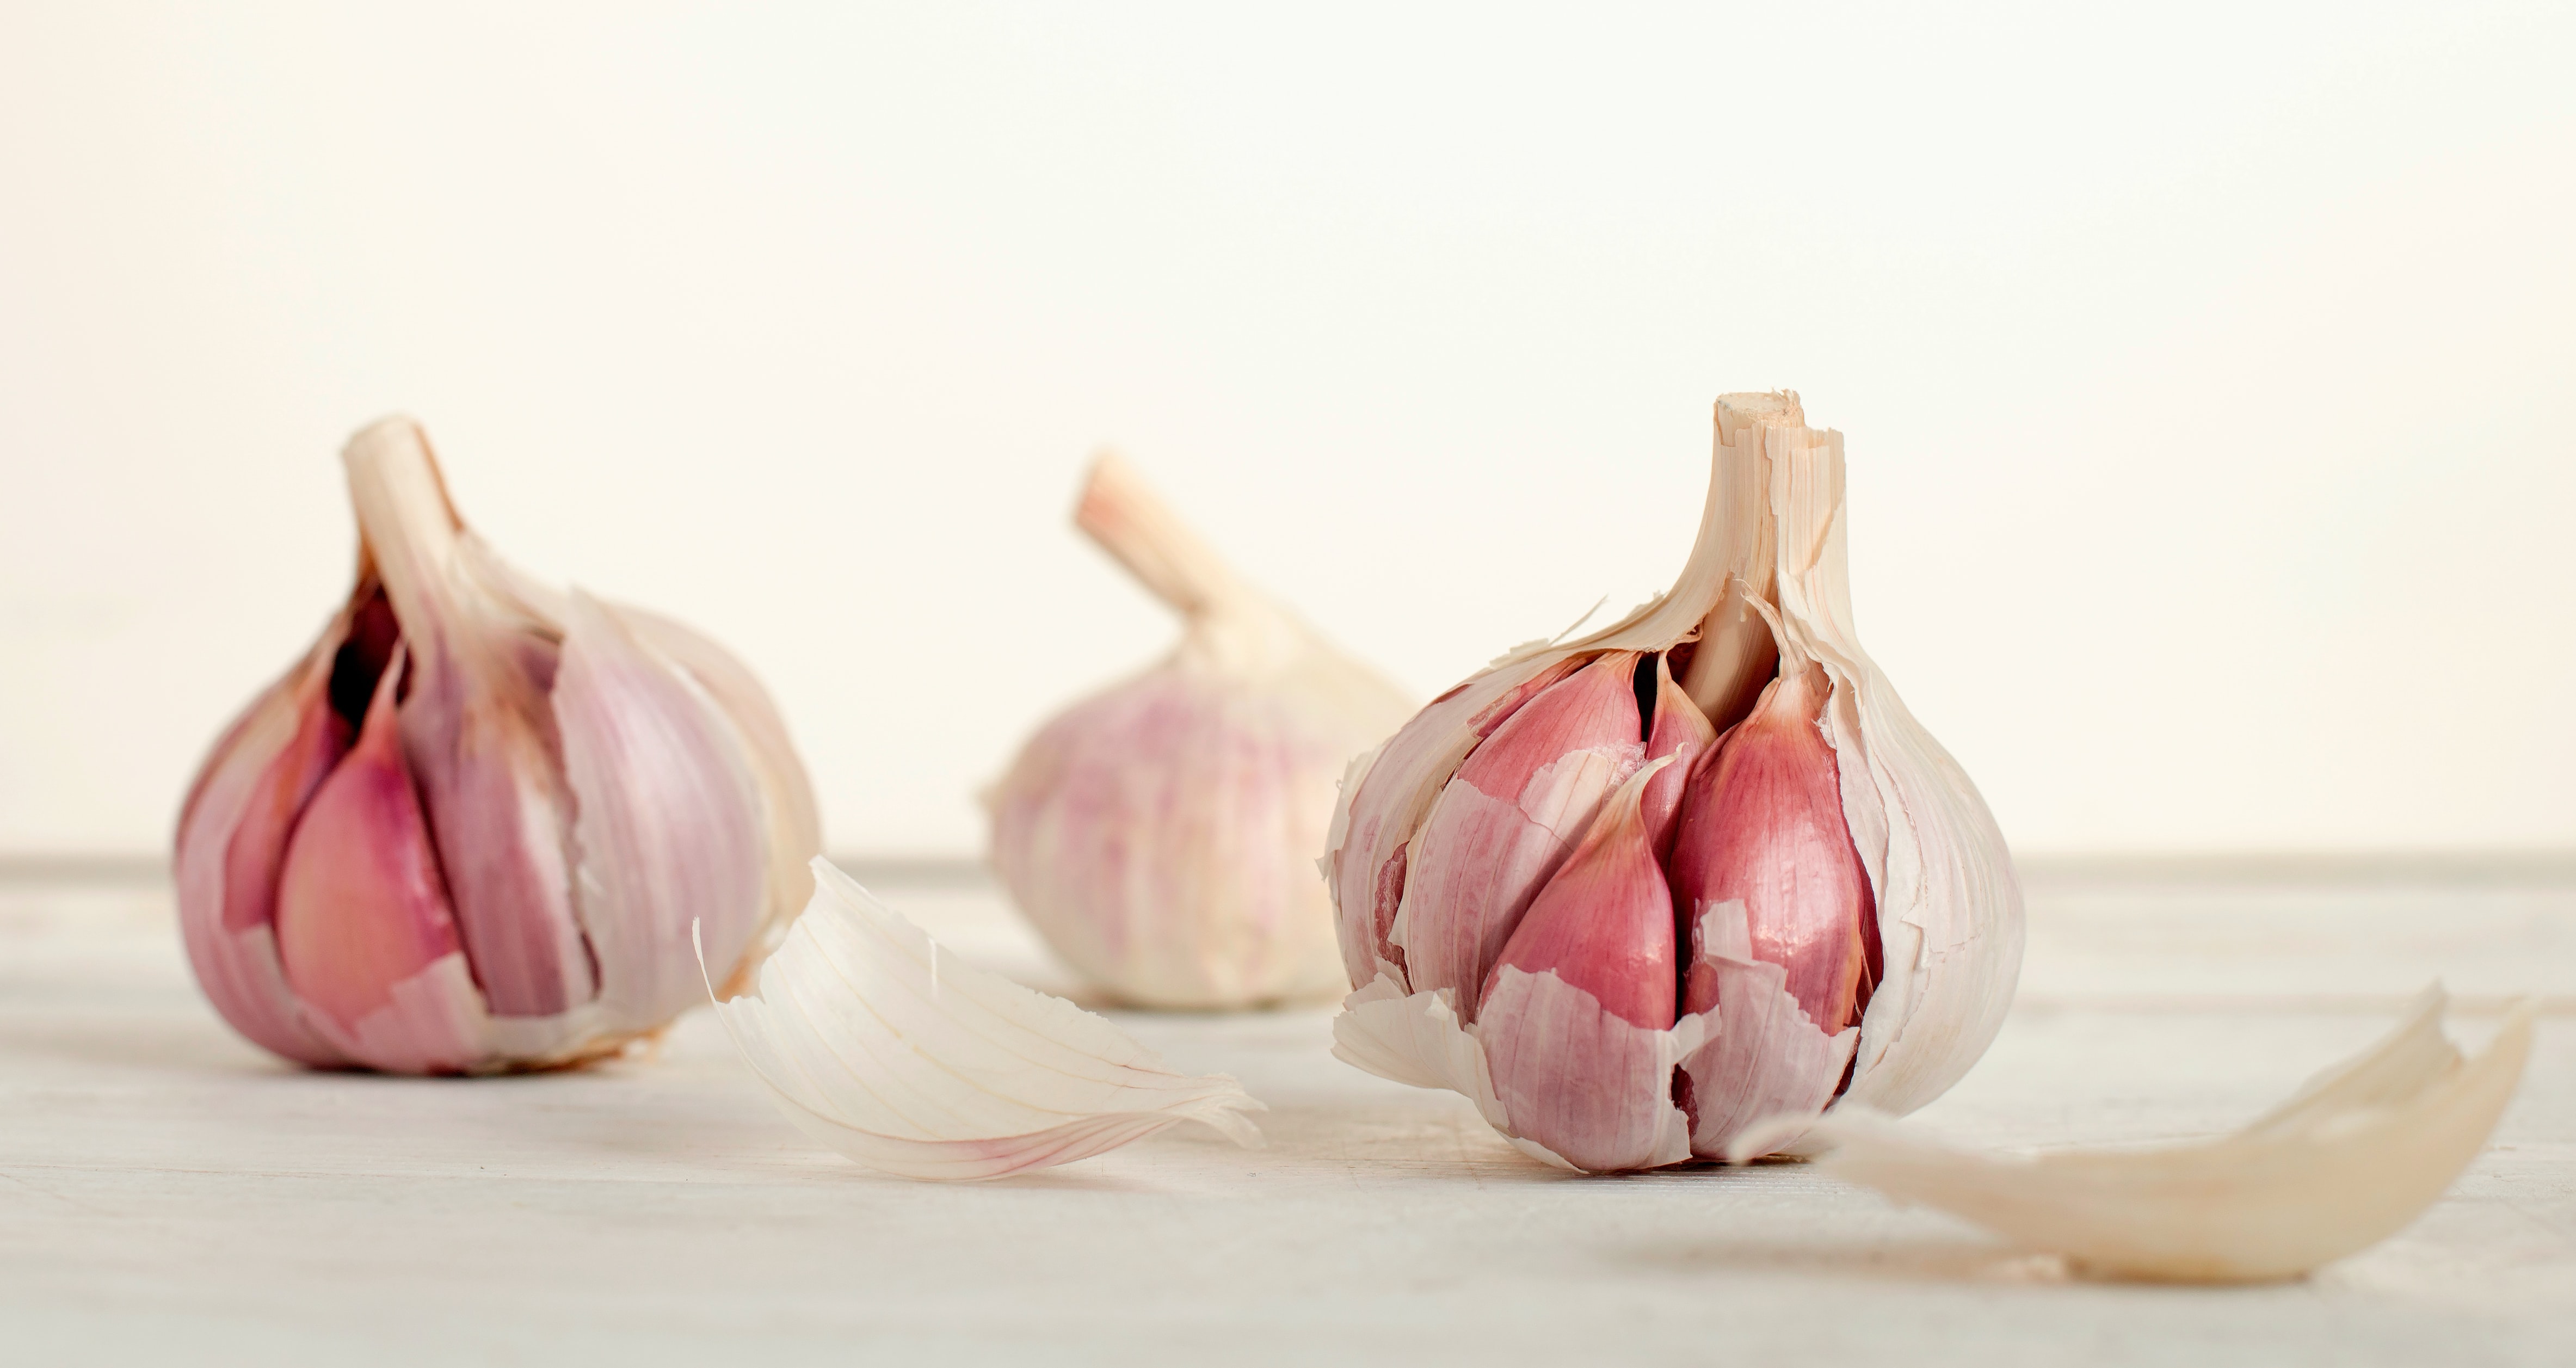 Garlic green house farming: Photo by unsplash